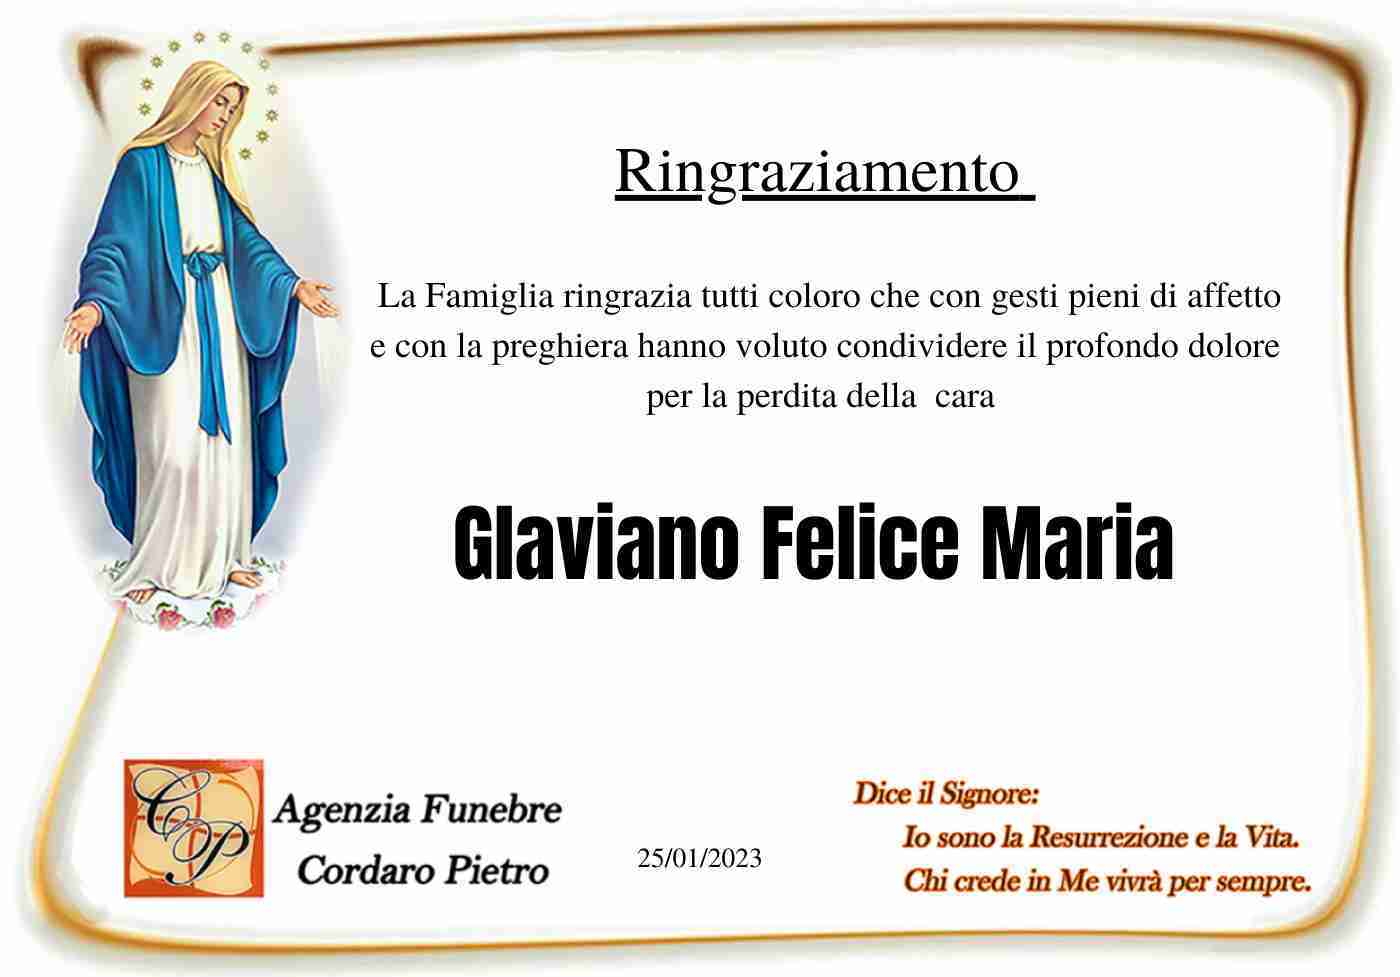 Glaviano Felice Maria